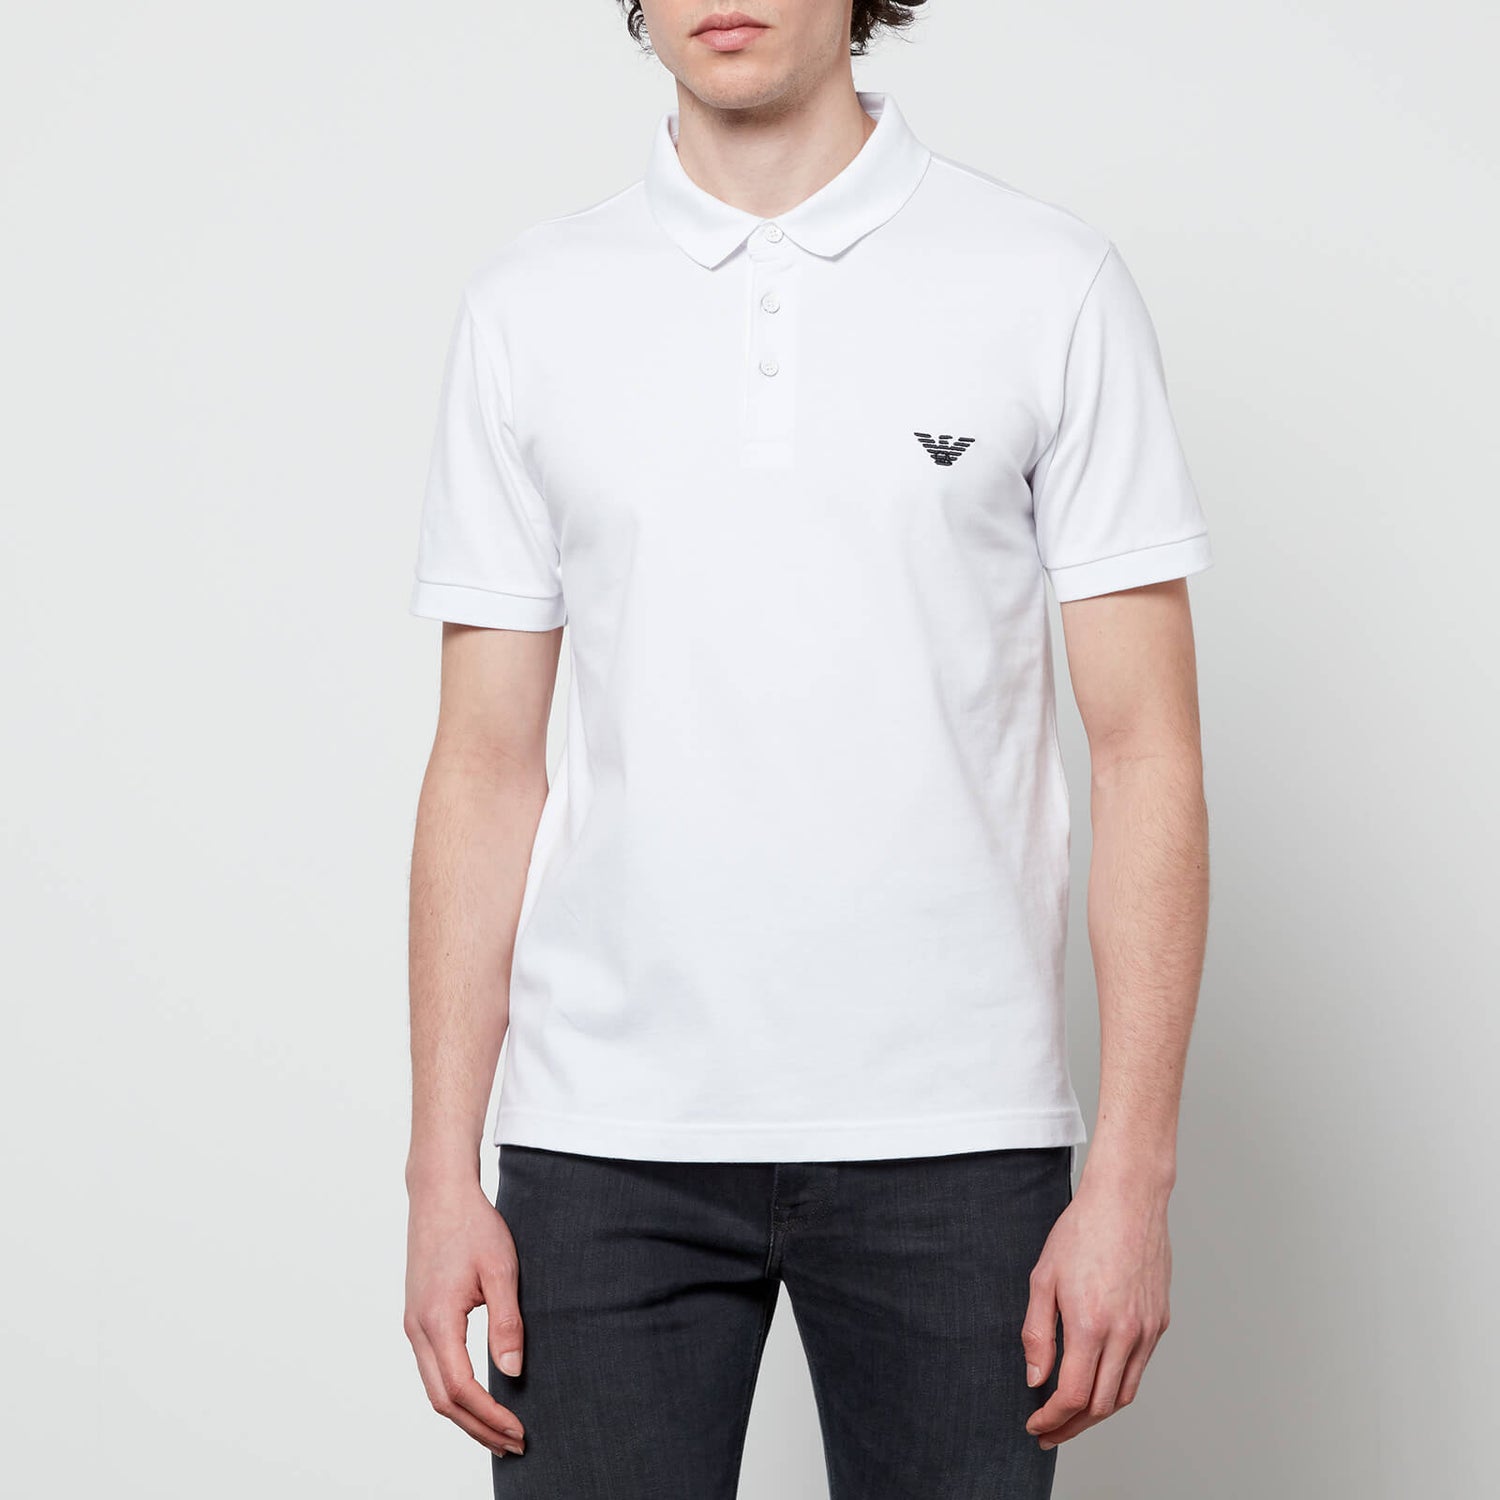 Emporio Armani Men's Polo Shirt - White - S